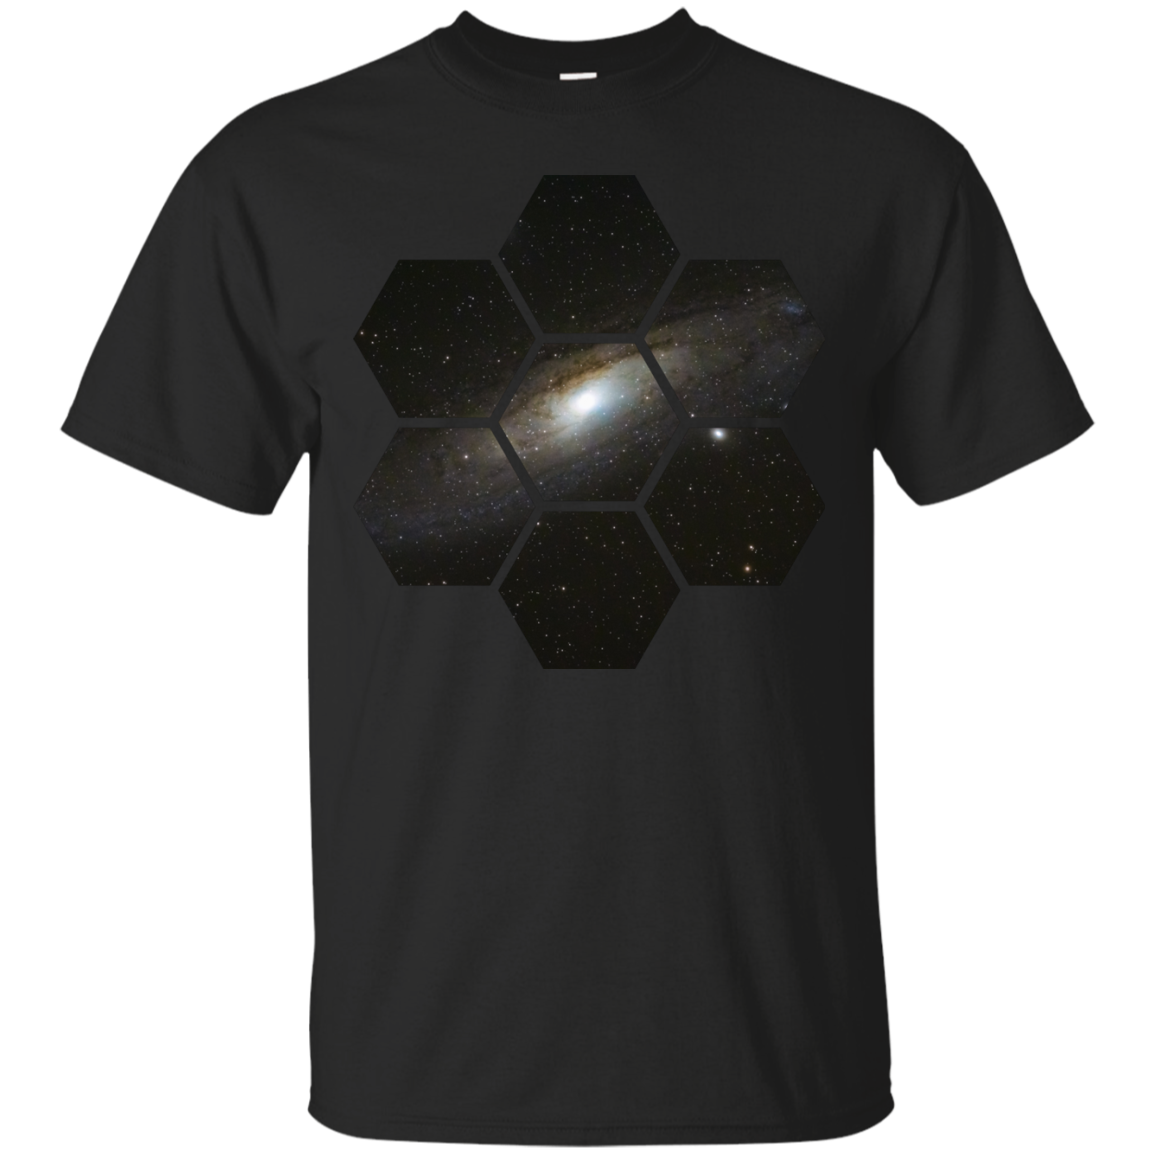 Hexagonal Andromeda Galaxy